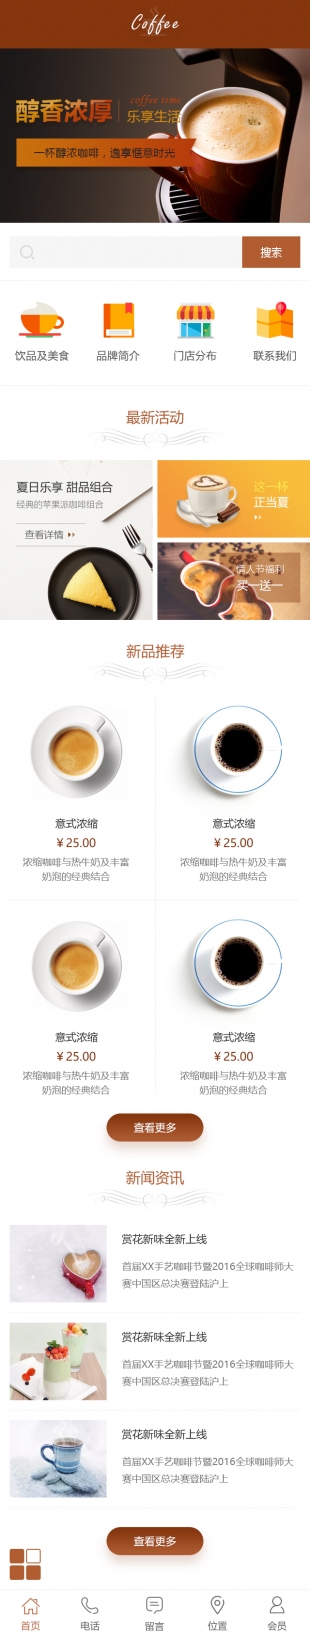 咖啡店类网站通用模板手机图片